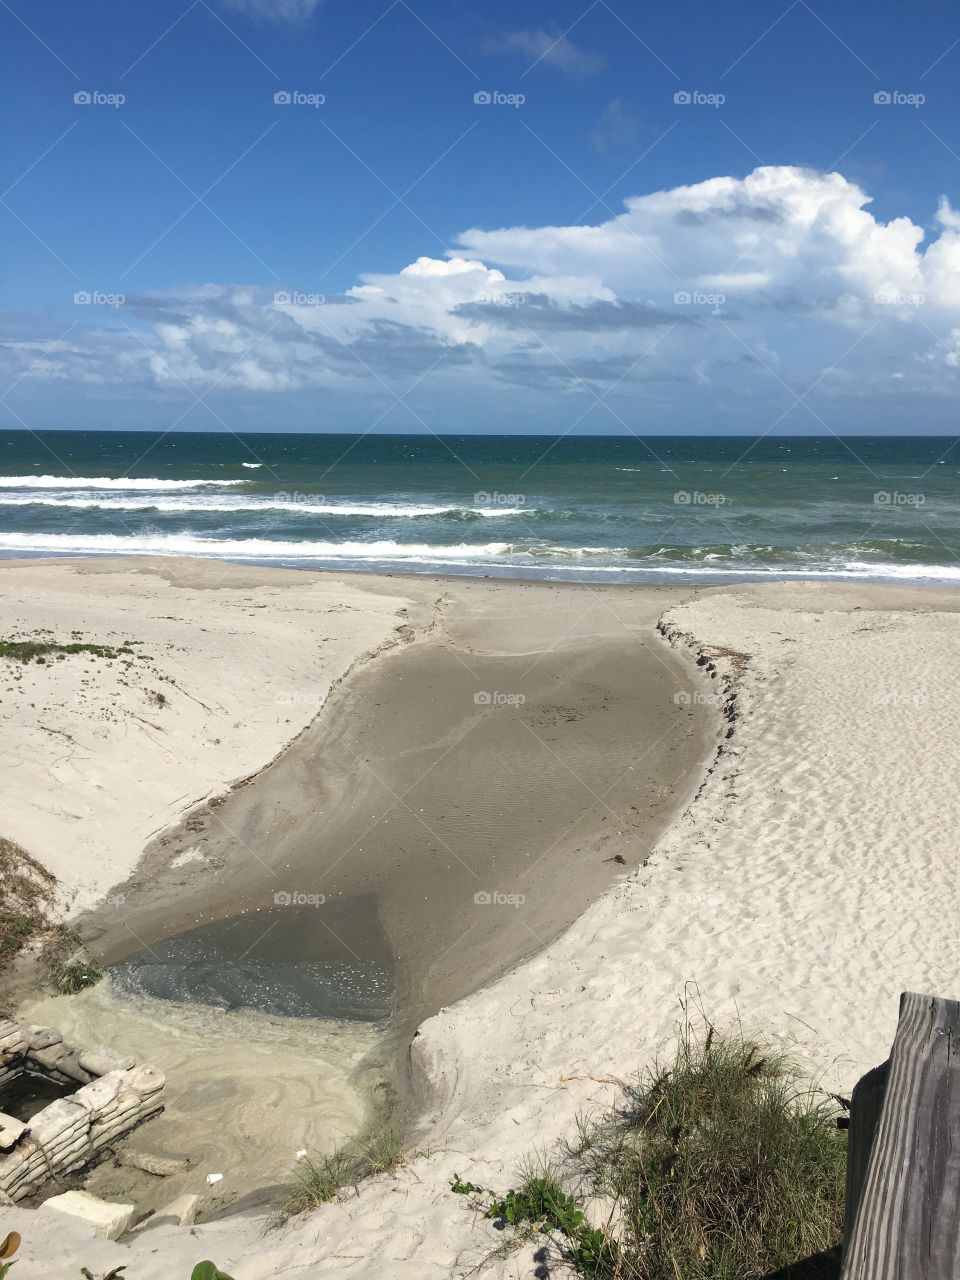 Beach Erosion Melbourne Florida before Hurricane Mathew 